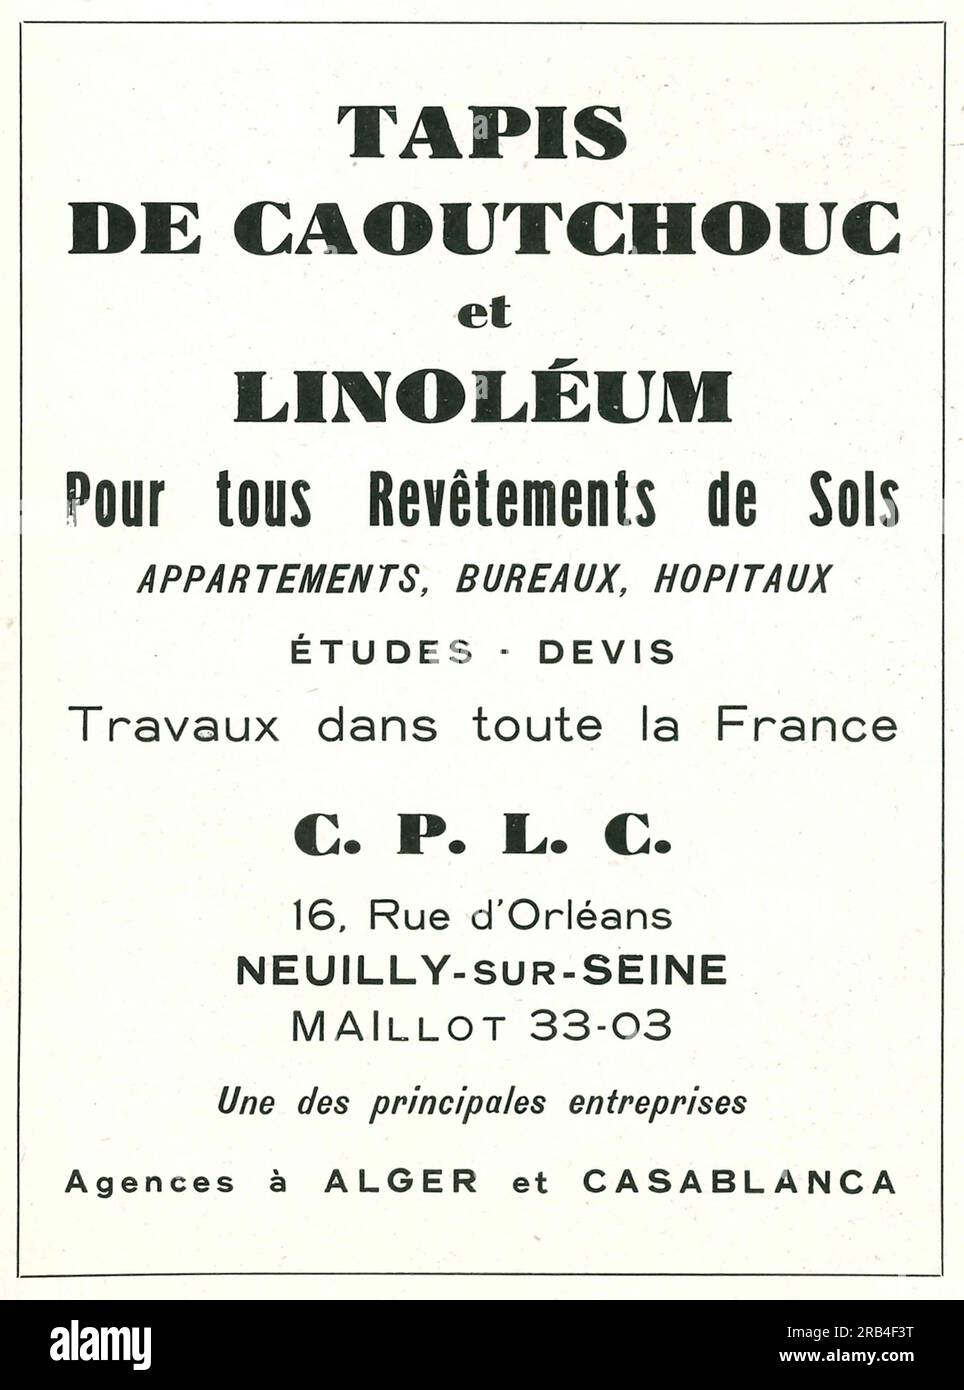 Tapis en caoutchouc et linoléum annonce dans un magazine français 1950 Banque D'Images